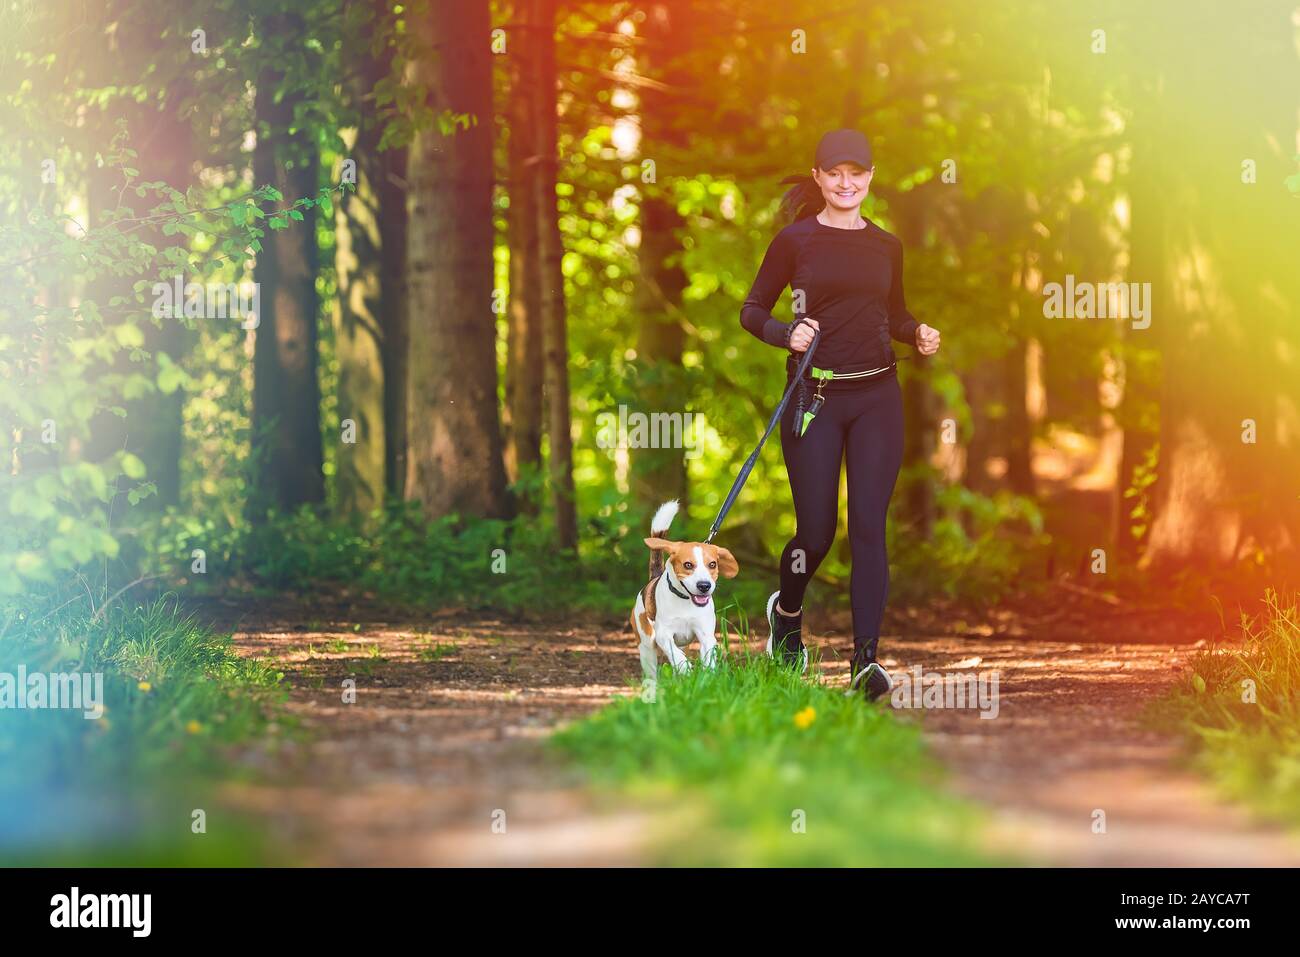 Fille est en train de courir avec un chien (Beagle) sur une laisse dans le printemps, jour ensoleillé dans la forêt Banque D'Images